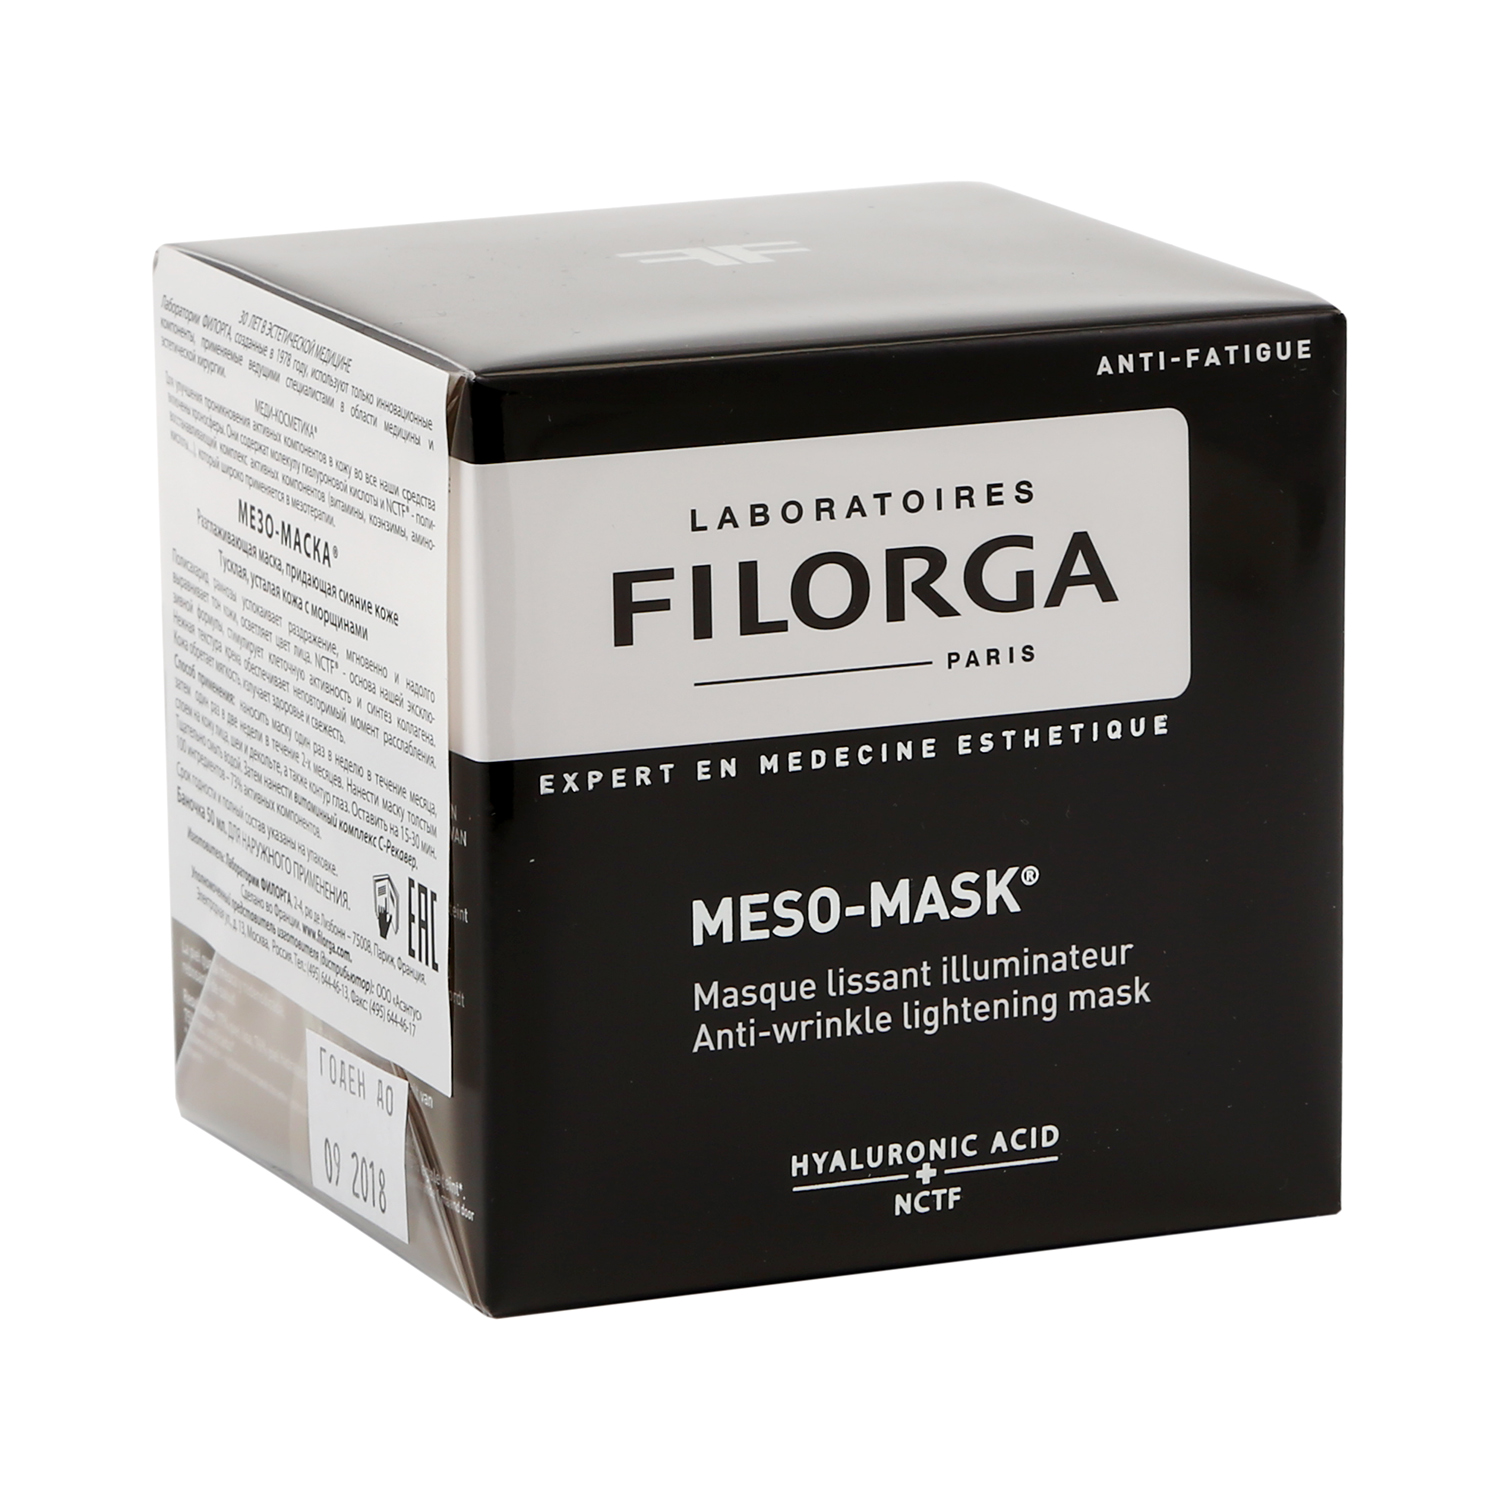 Филорга Мезо-Маска маска для лица разглаживающая придающая сияние 50мл filorga мезо маска разглаживающая маска придающая сияние коже 50 мл